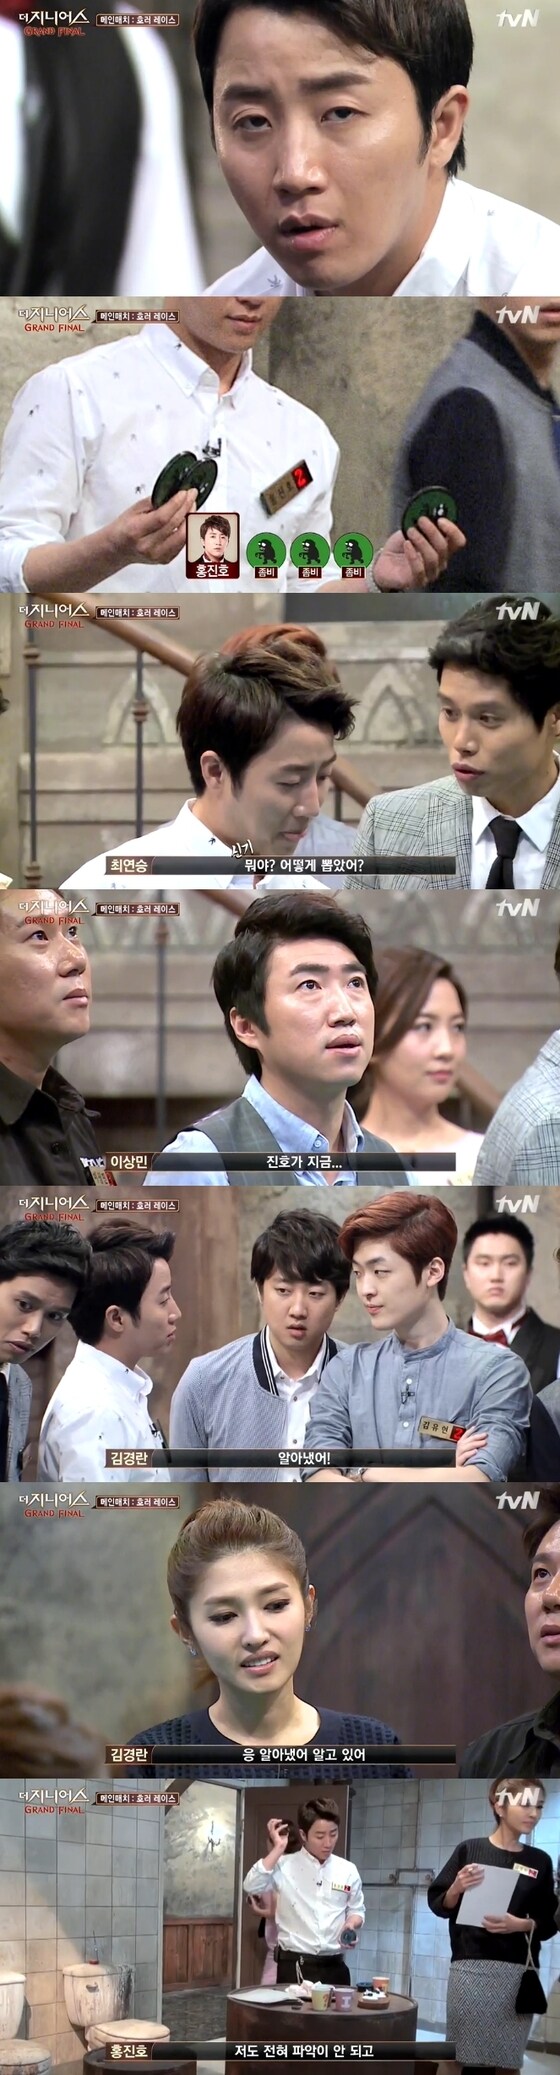 '더 지니어스' 홍진호가 우연으로 좋은 패를 잡았다. © News1스포츠 / tvN '더 지니어스 그랜드 파이널' 캡처